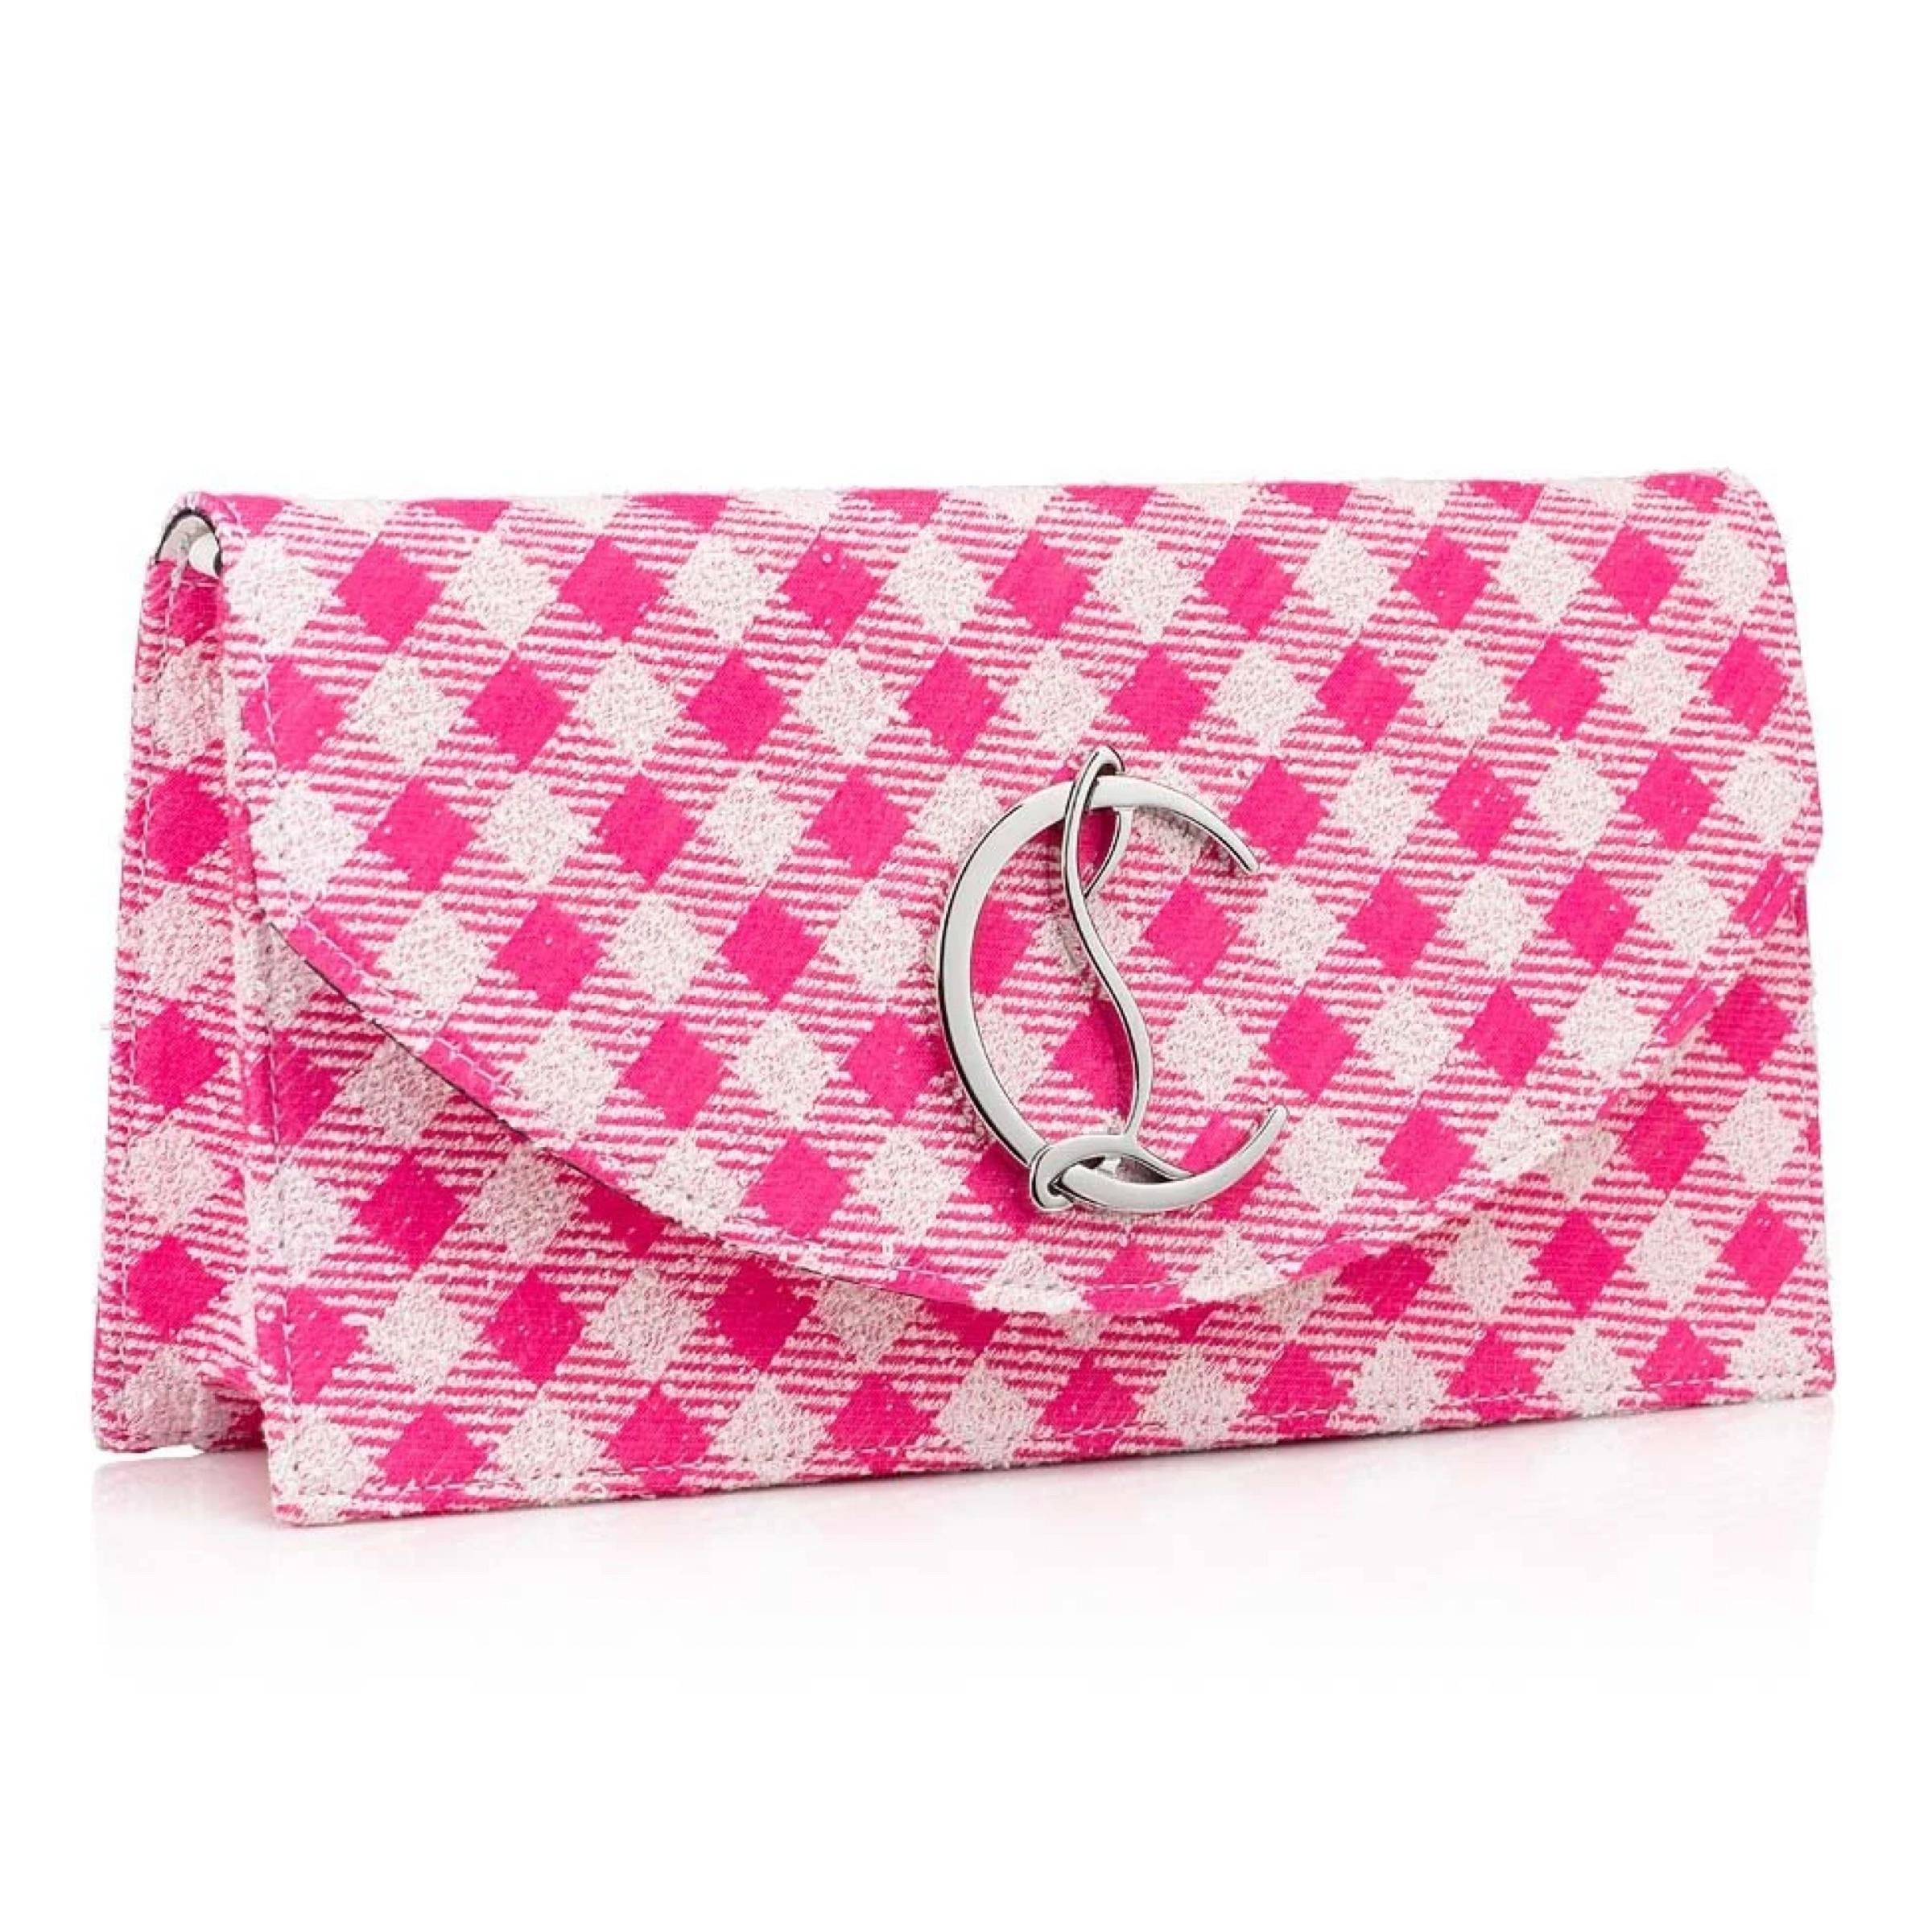 pink louboutin bag